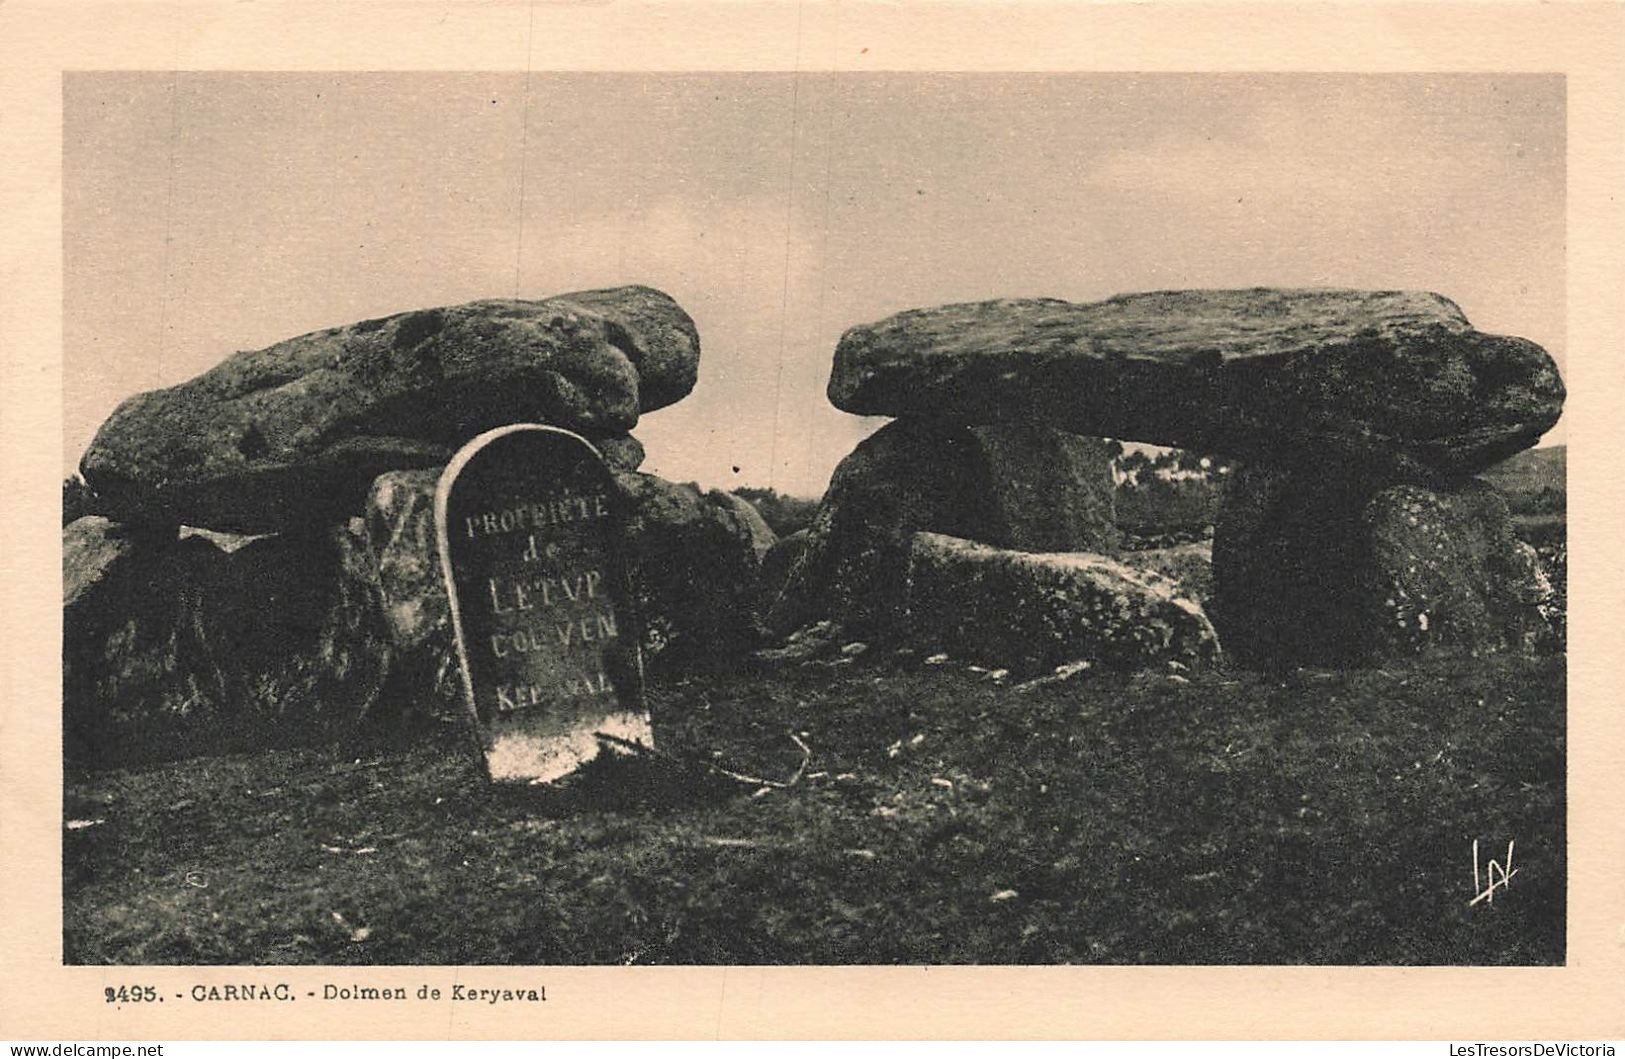 FRANCE - Carnac - Dolmen De Keryaval - Propriété De Letup Colven - Carte Postale Ancienne - Carnac